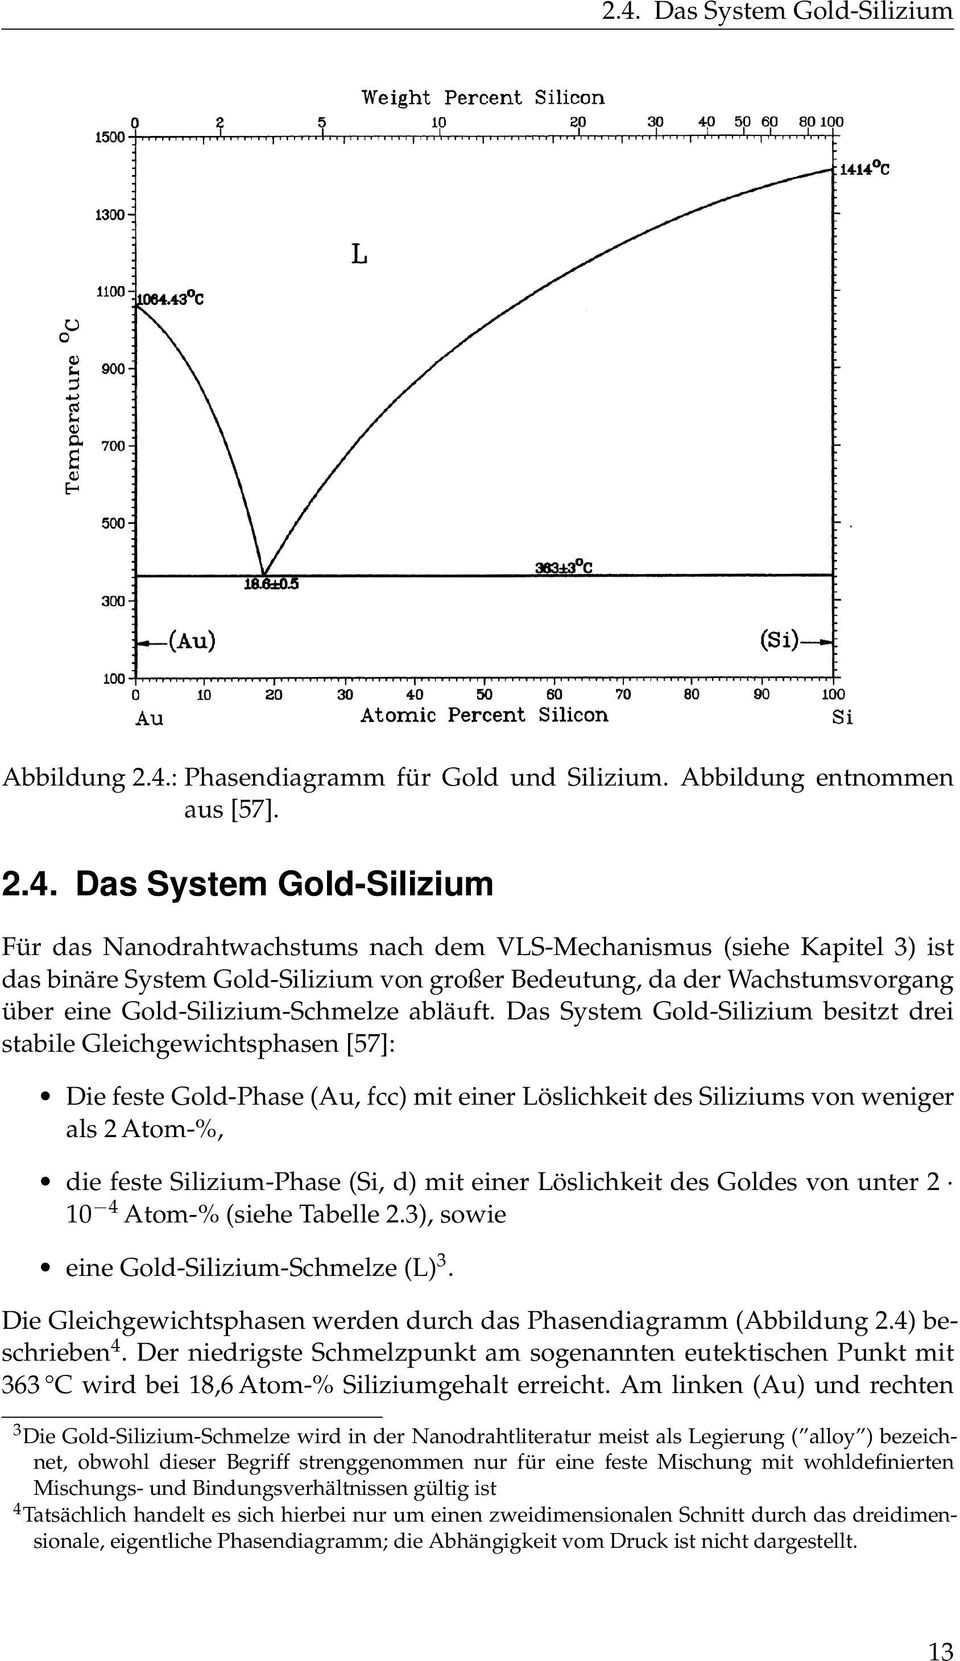 Das System Gold-Silizium besitzt drei stabile Gleichgewichtsphasen [57]: Die feste Gold-Phase (Au, fcc) mit einer Löslichkeit des Siliziums von weniger als 2 Atom-%, die feste Silizium-Phase (Si, d)